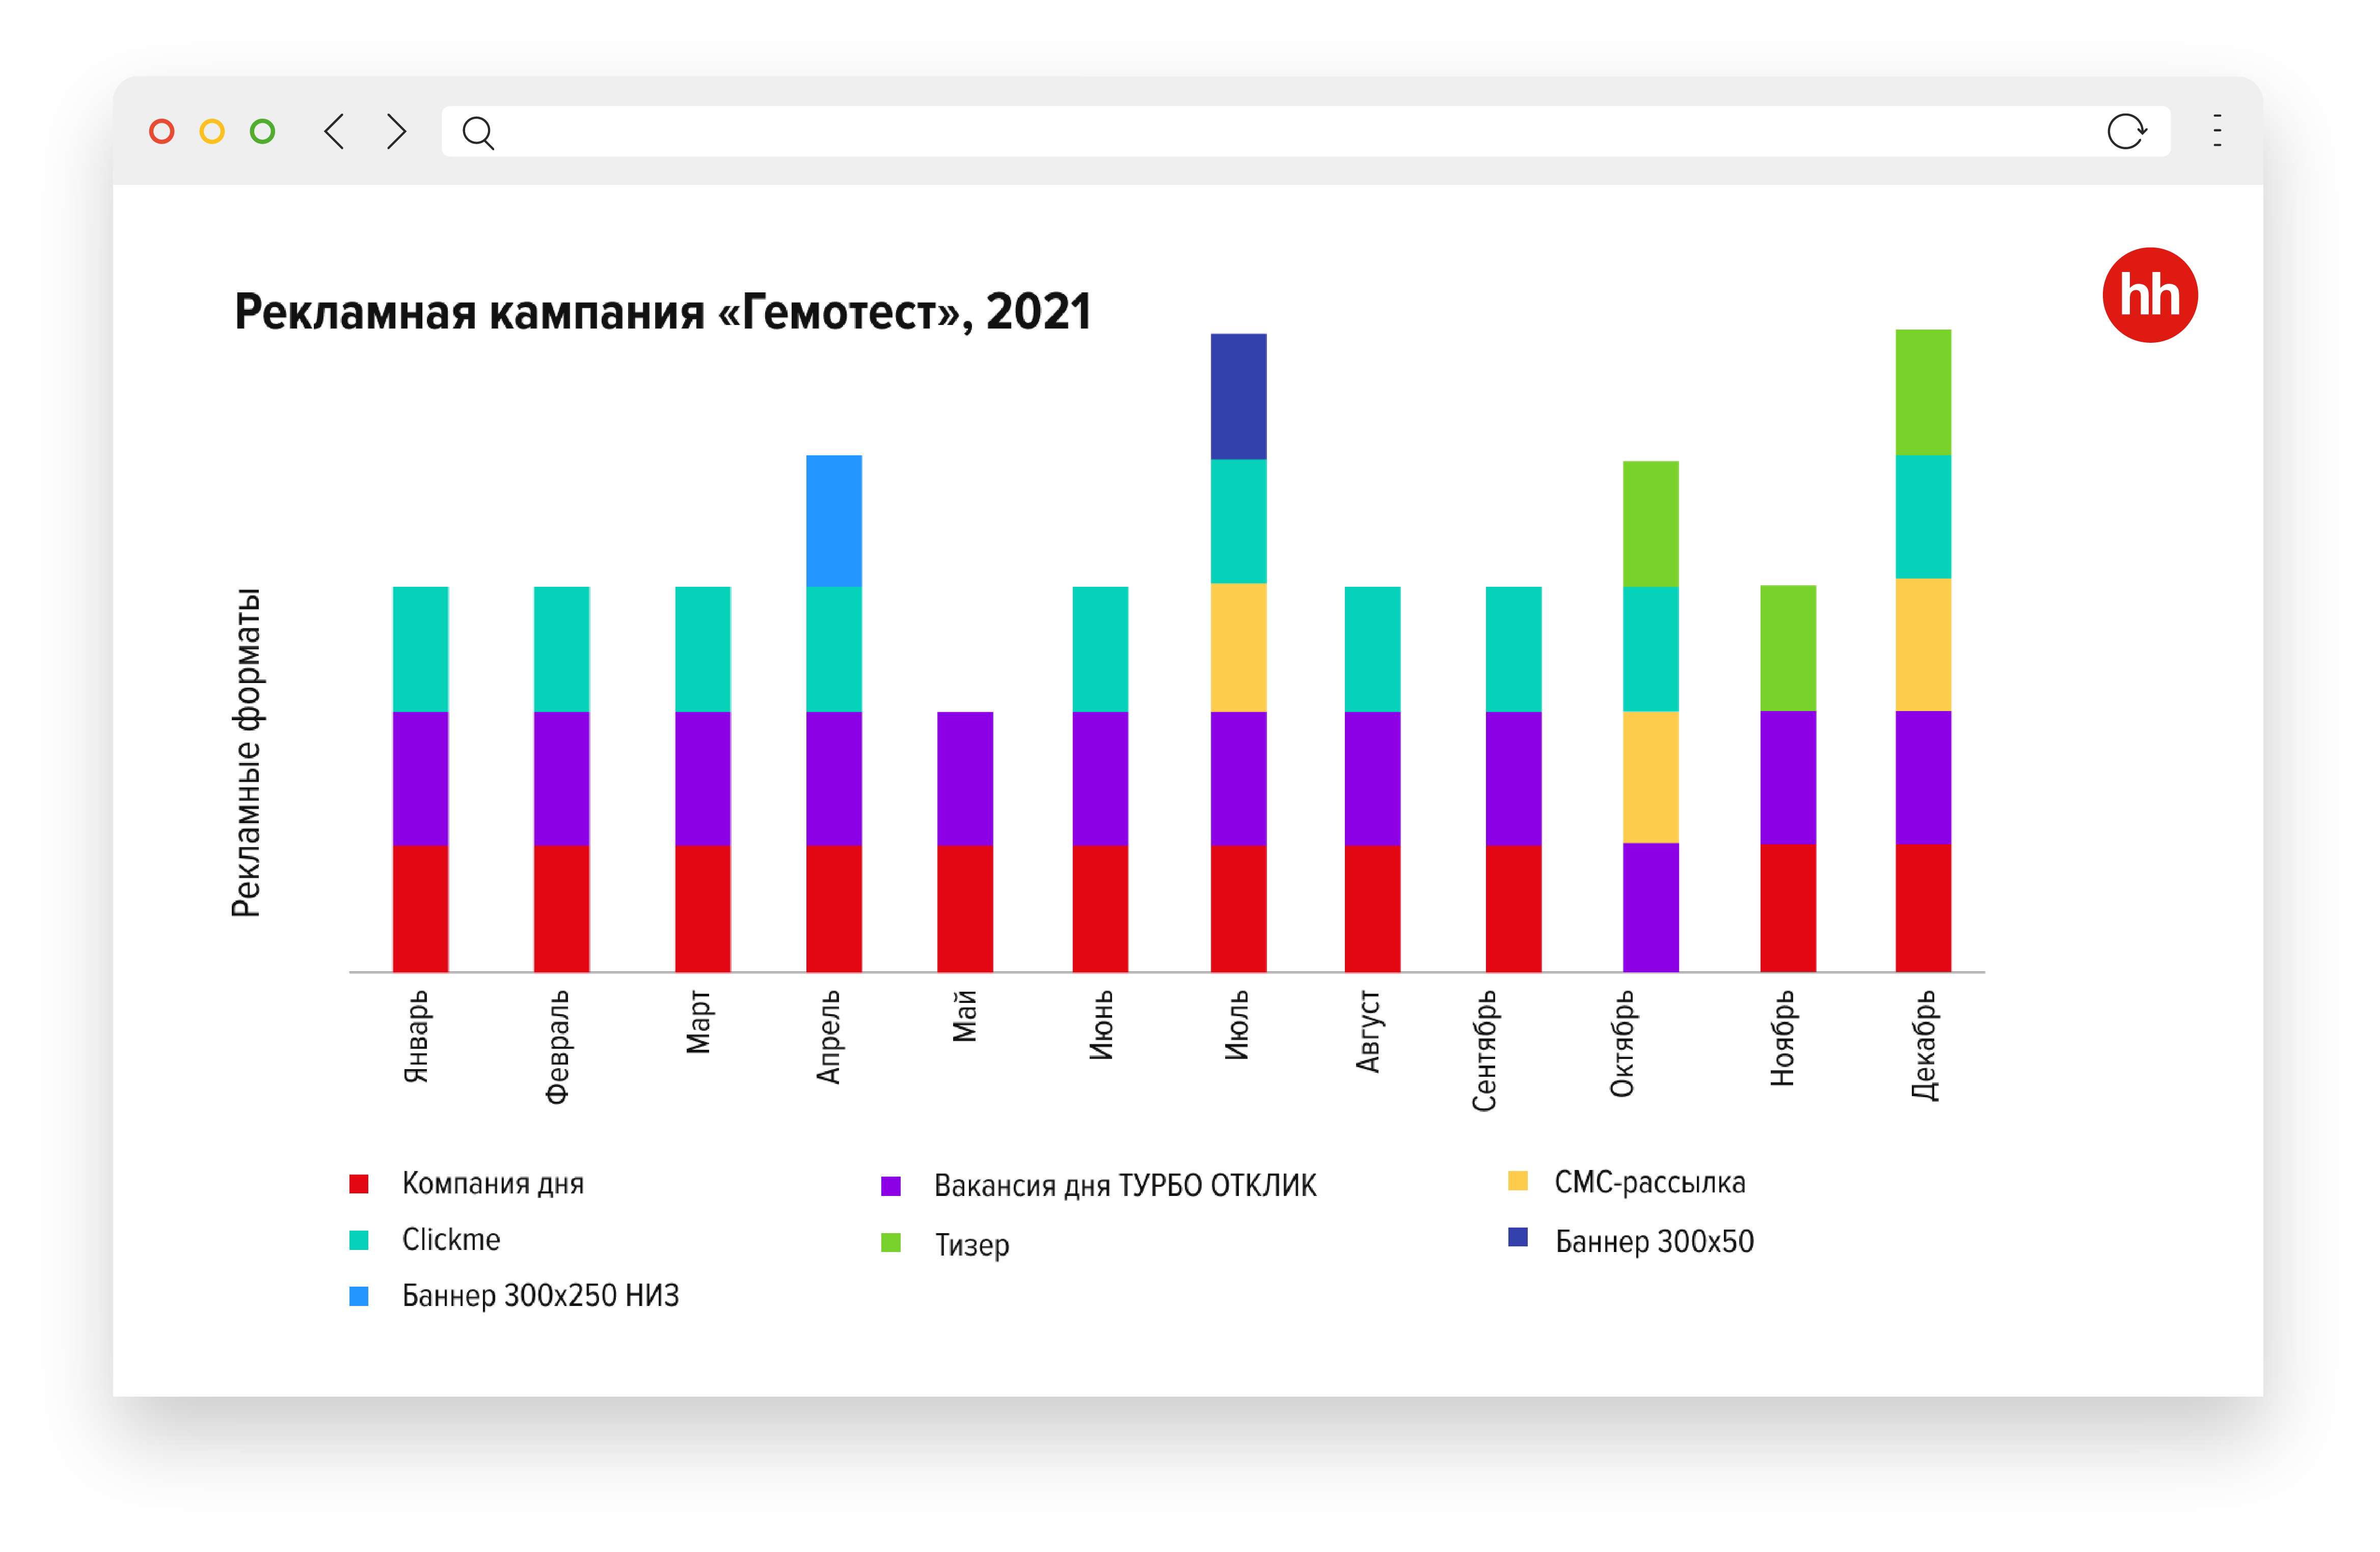 Как нанимать по 500 человек в месяц: кейс «Гемотест» и hh.ru